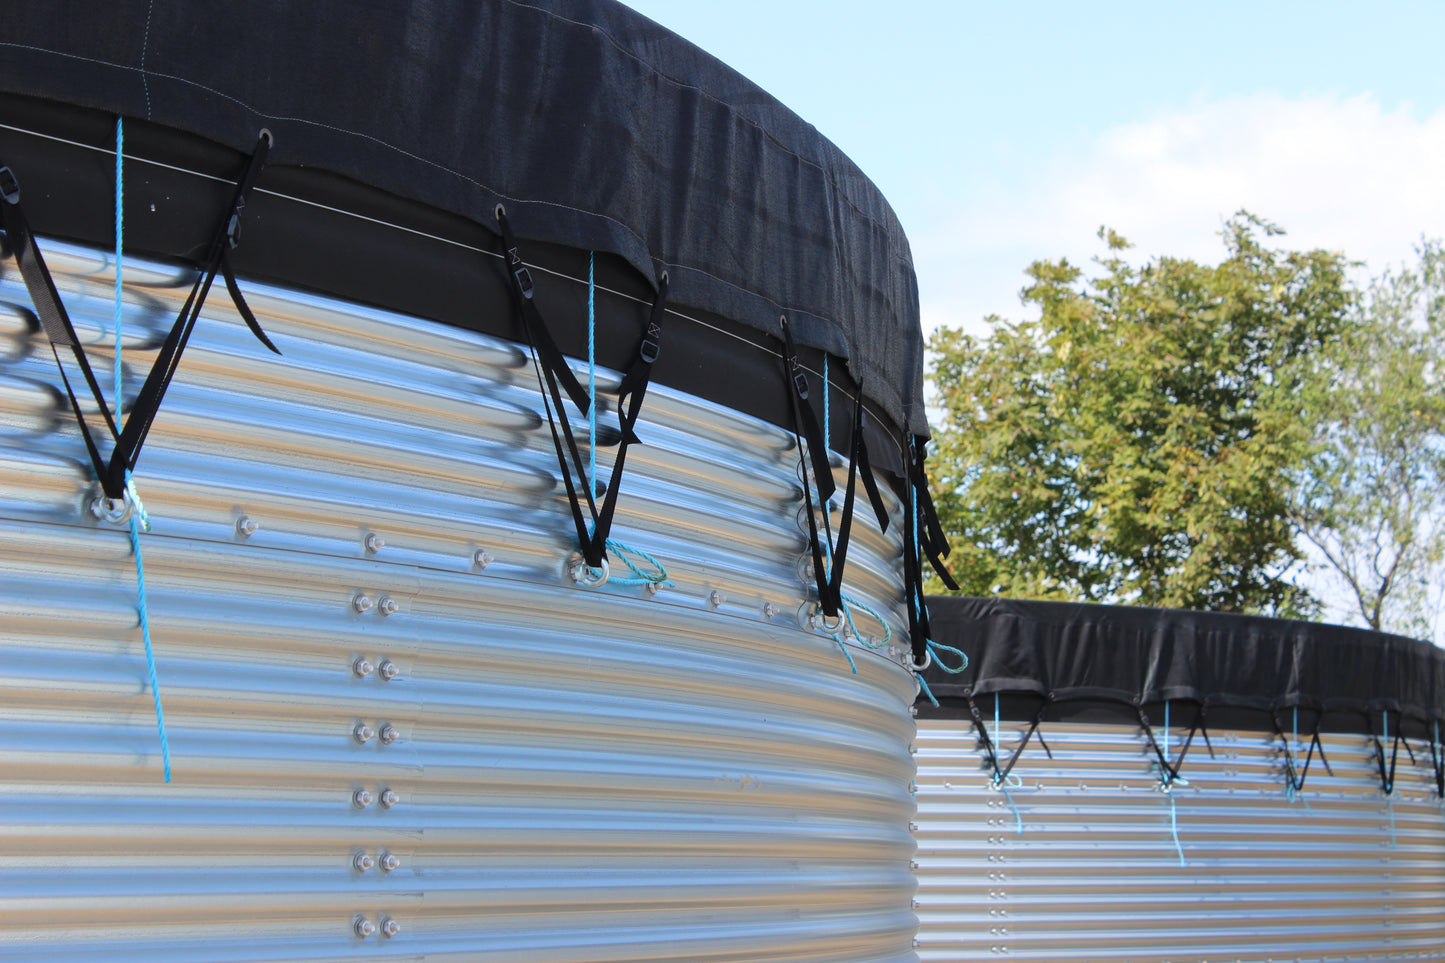 147,100 litre Galvanised Steel Water Tank